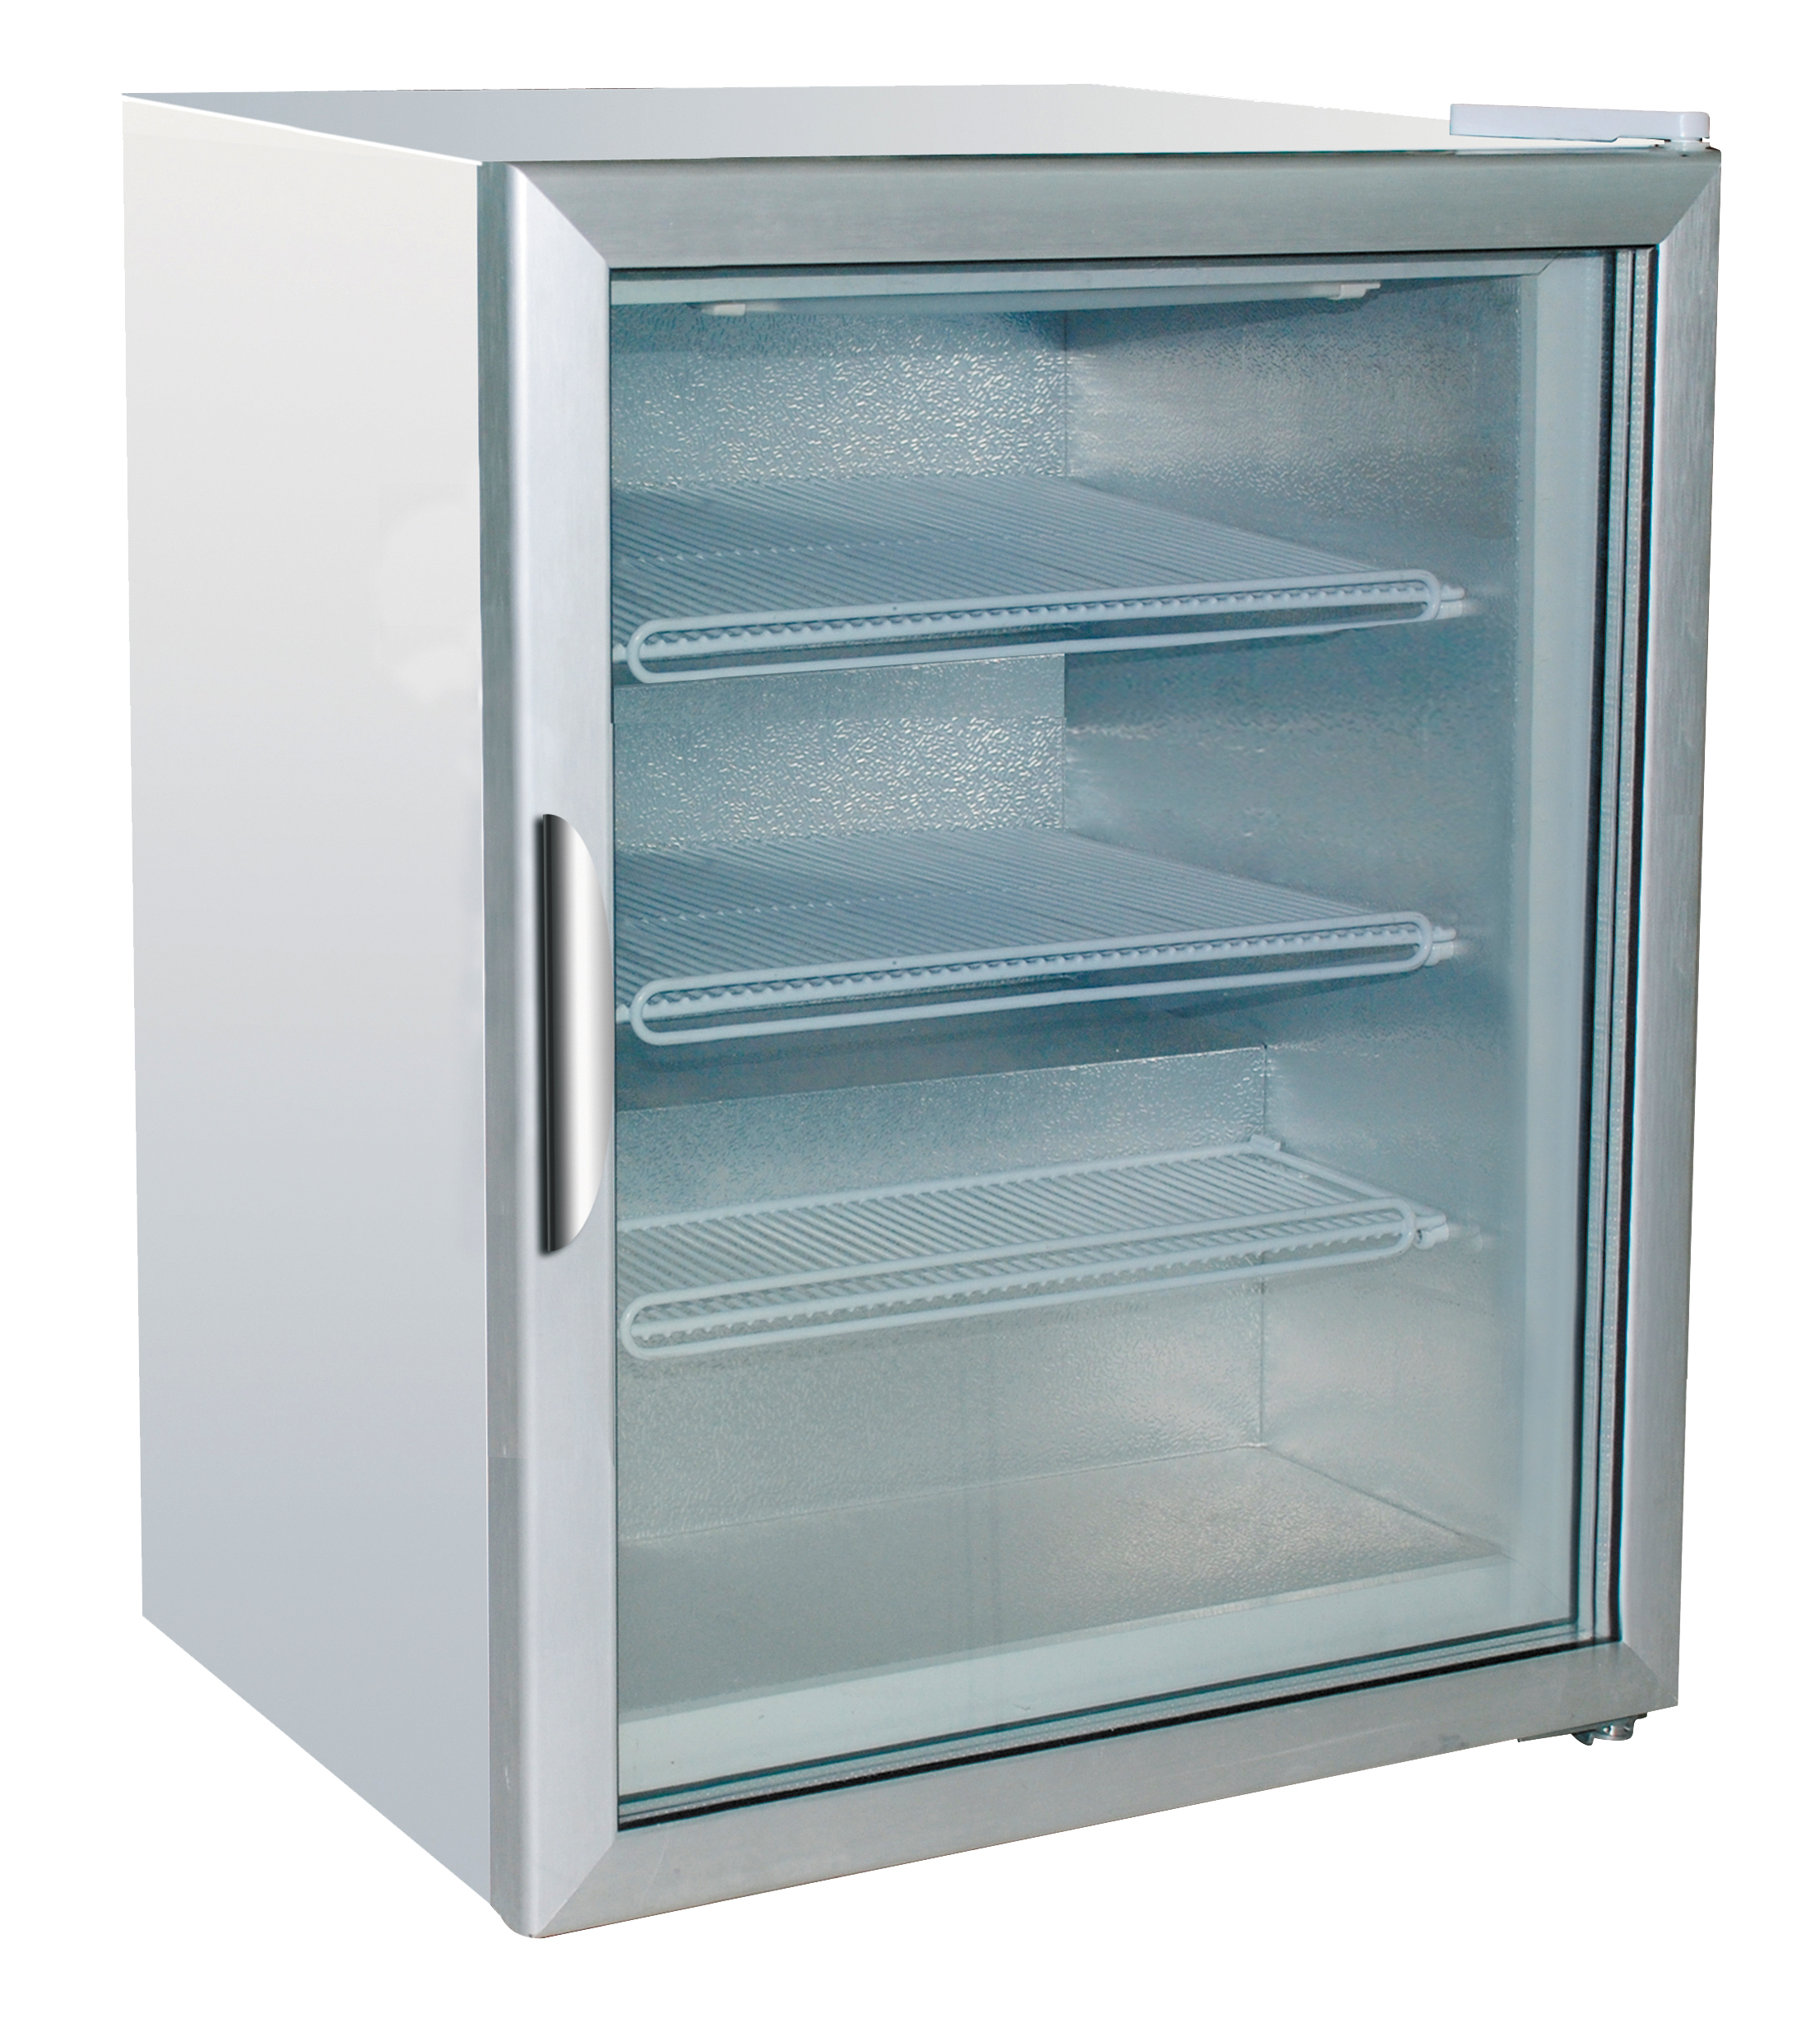 Шкаф морозильный Forcool SD100G